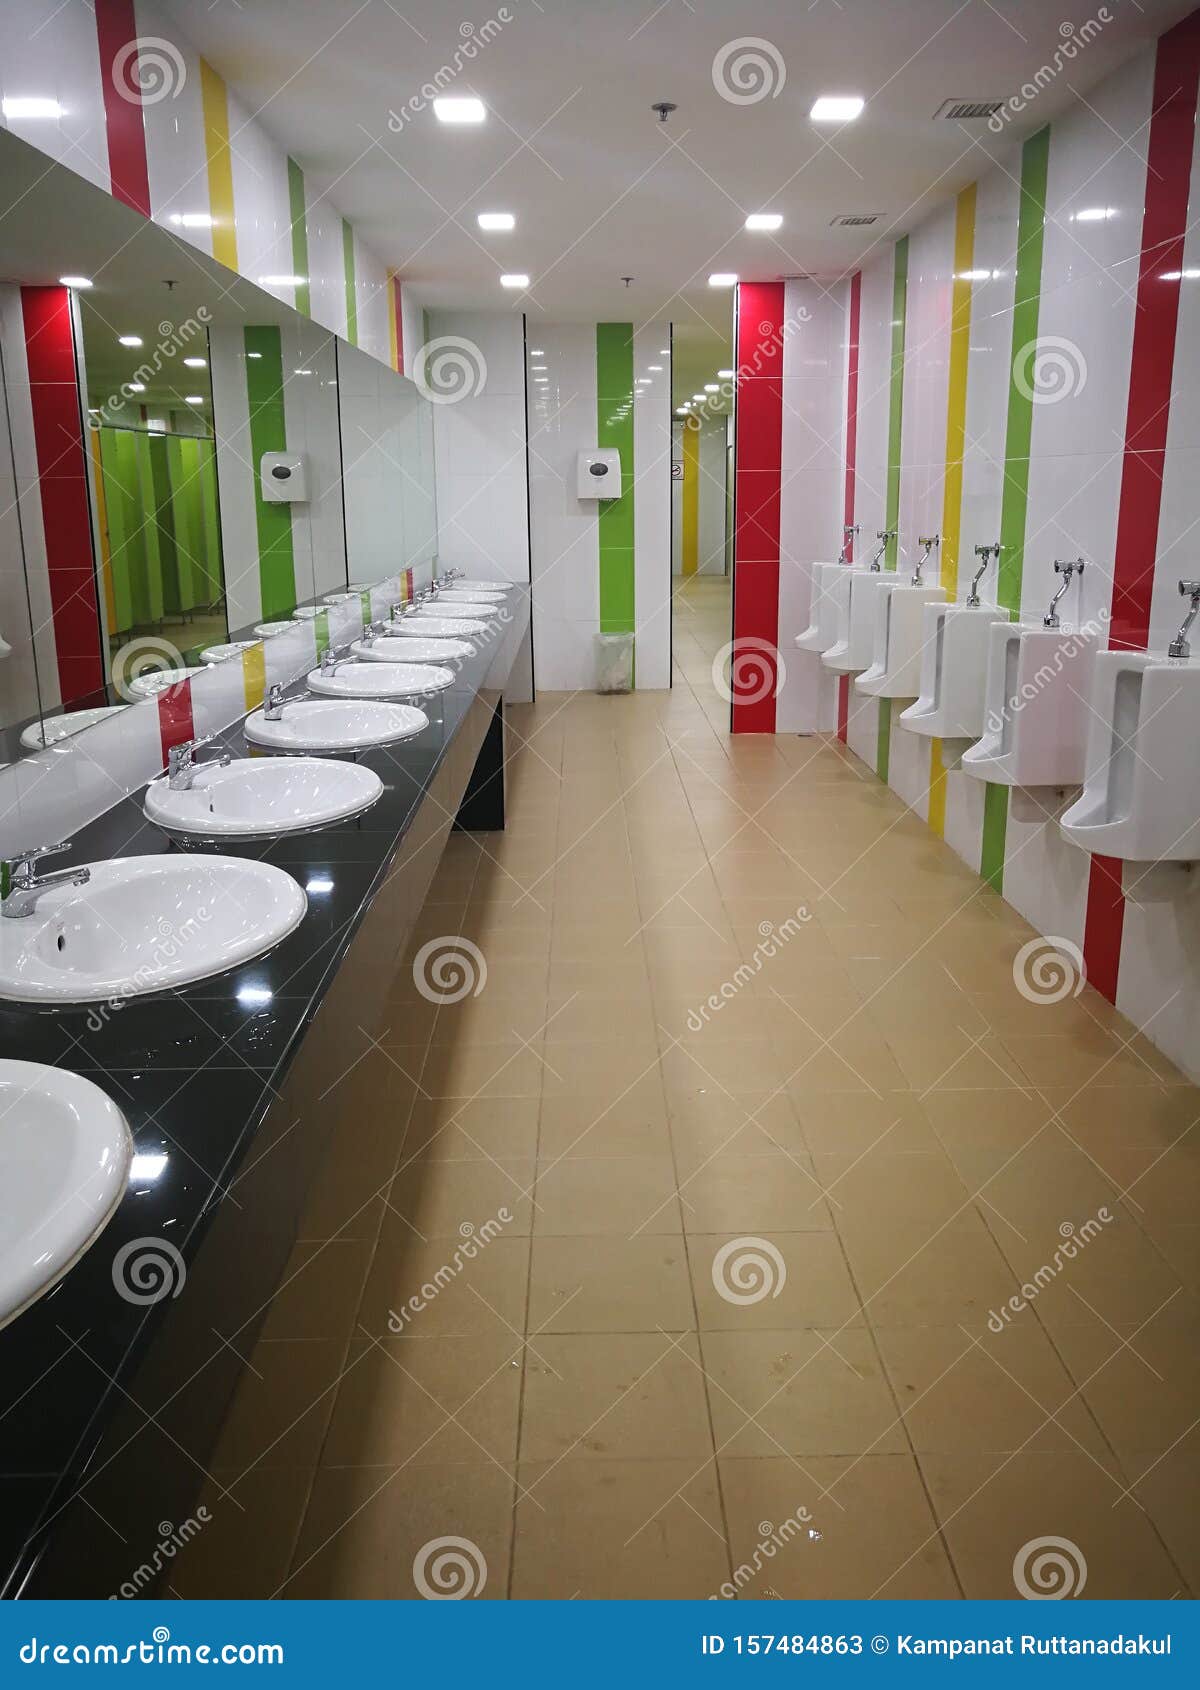 wash basins in luxury bathrooms